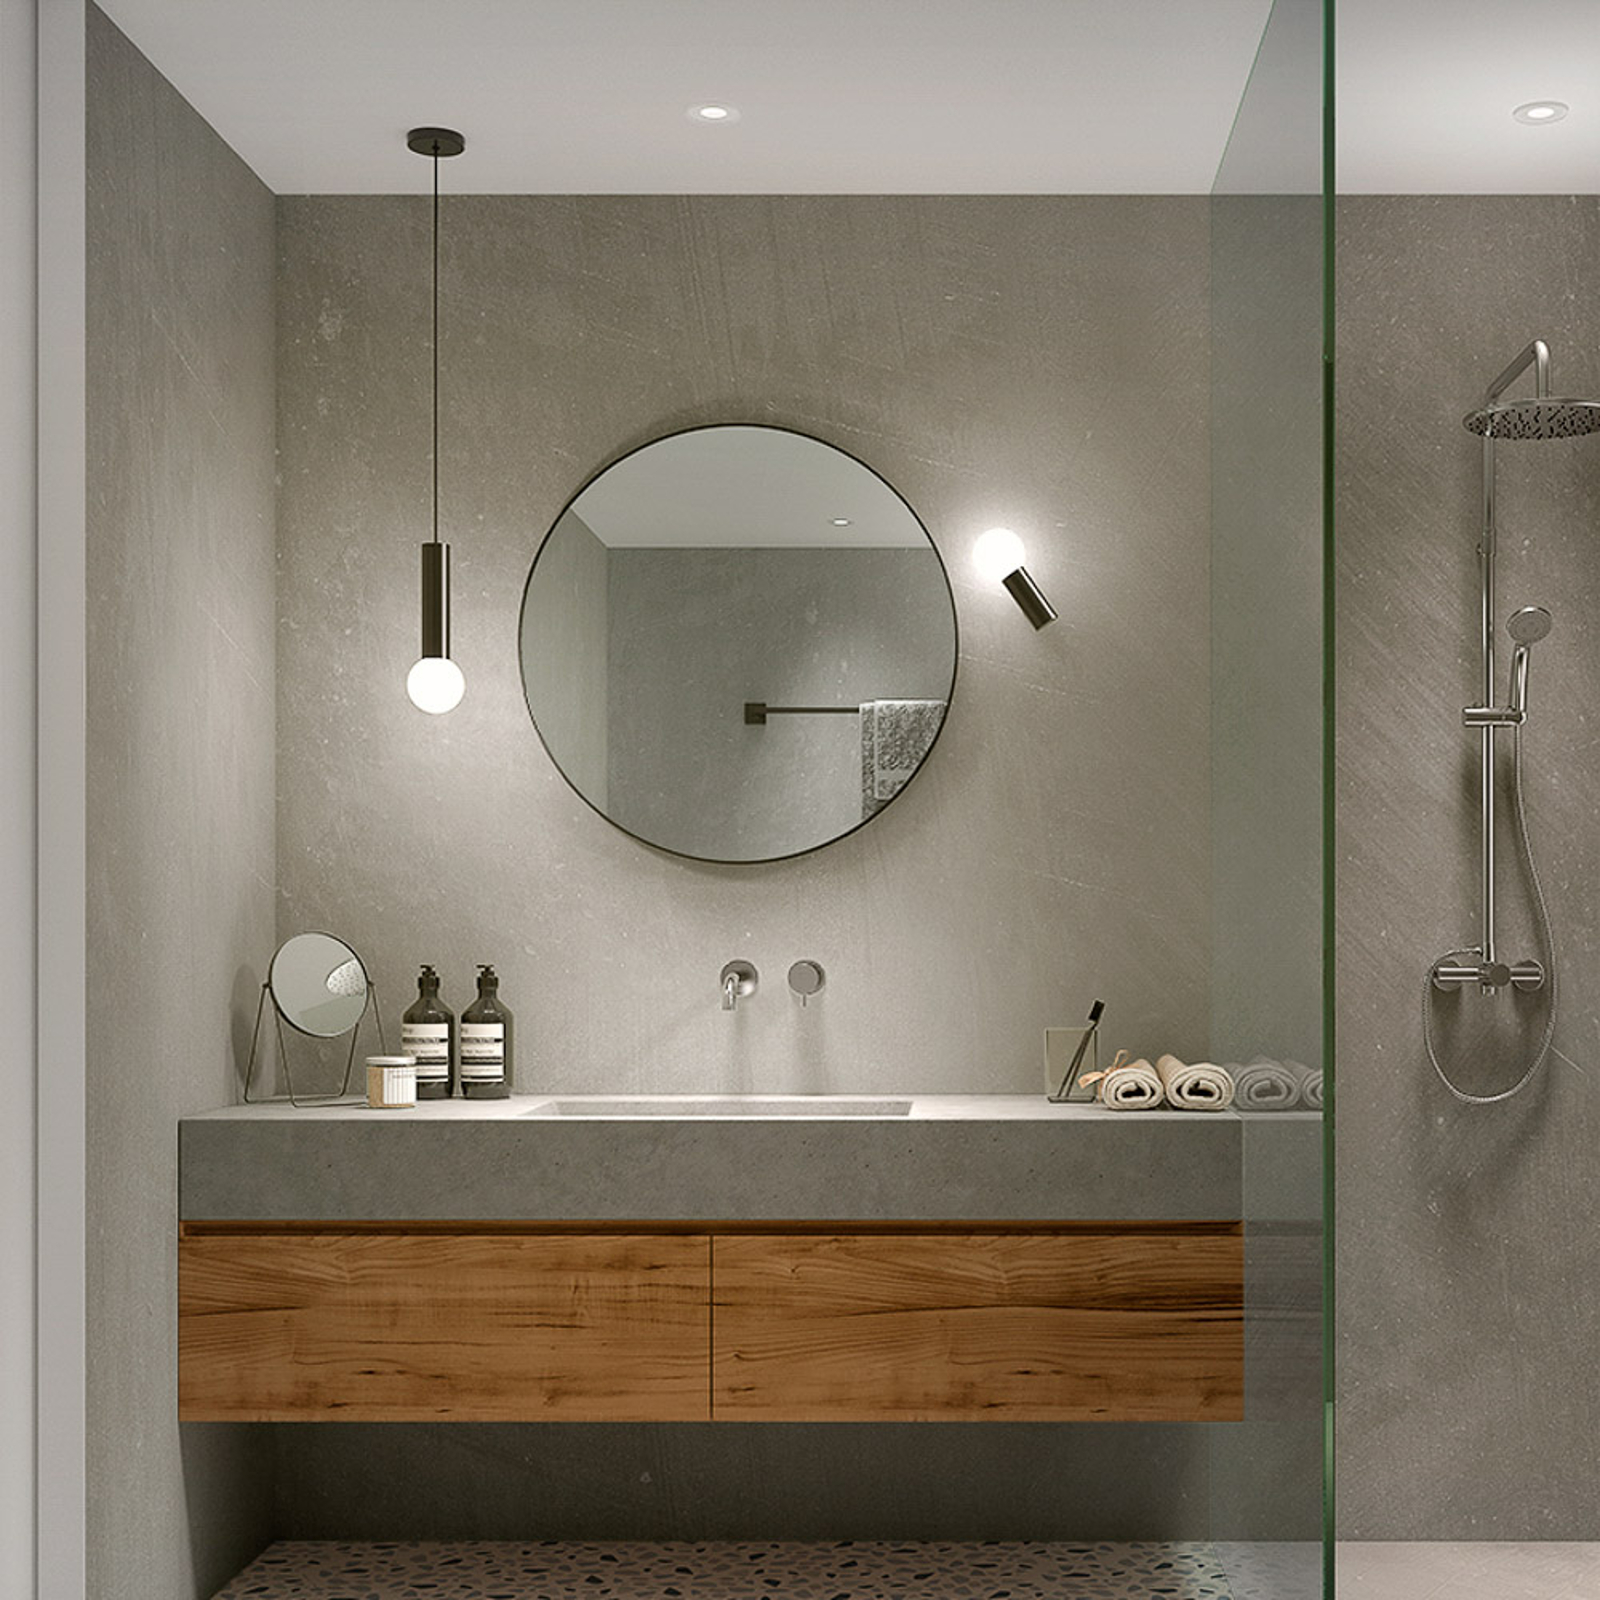 Cómo iluminar un espejo de baño para verte mejor?